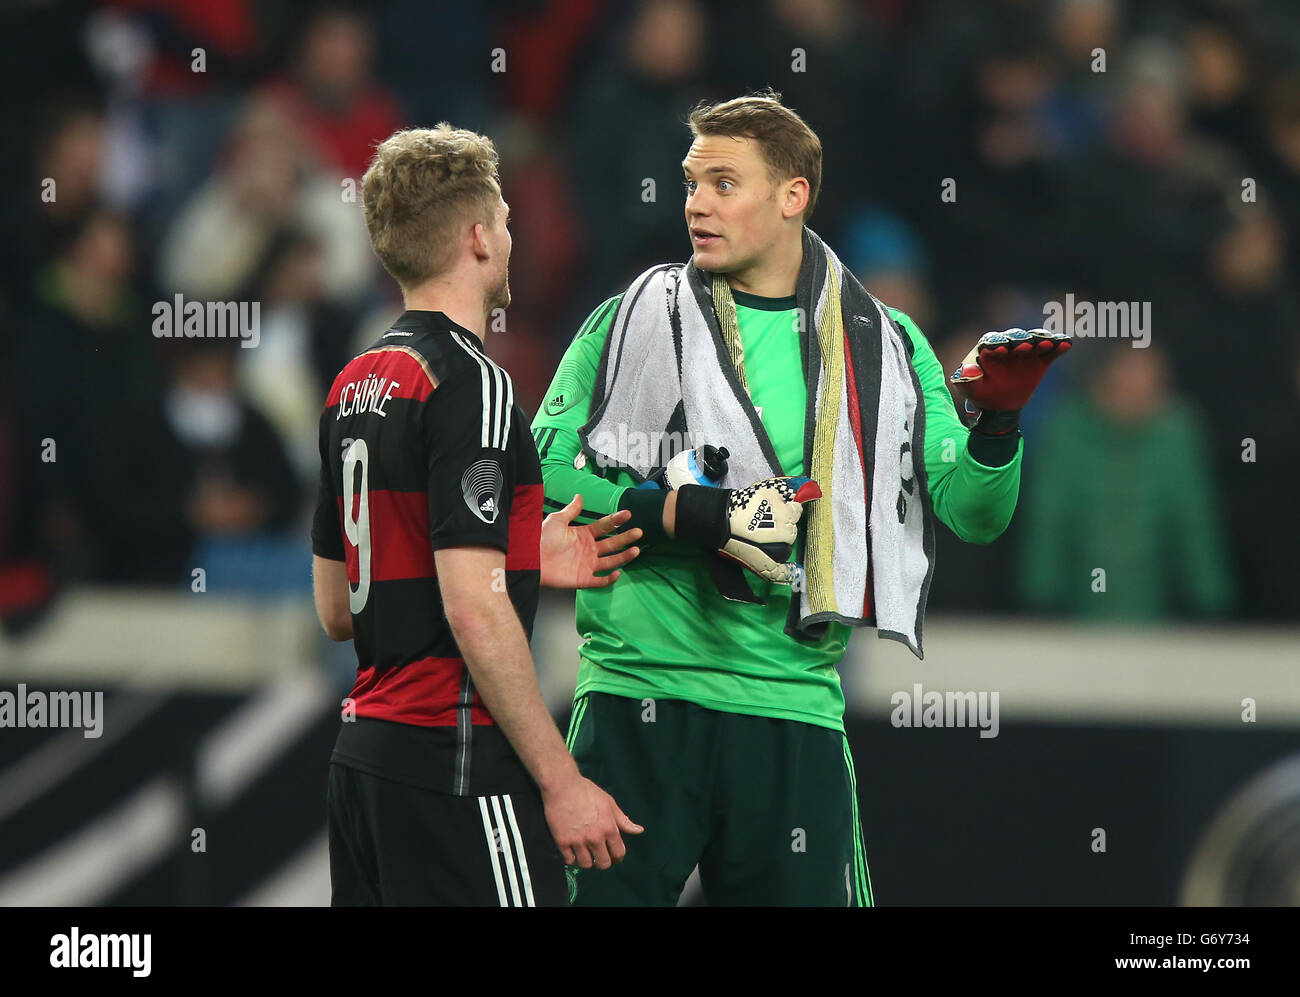 Calcio - Internazionale amichevole - Germania / Cile - Mercedes-Benz Arena. Andre Schurrle (a sinistra) parla con il portiere Manuel Neuer Foto Stock